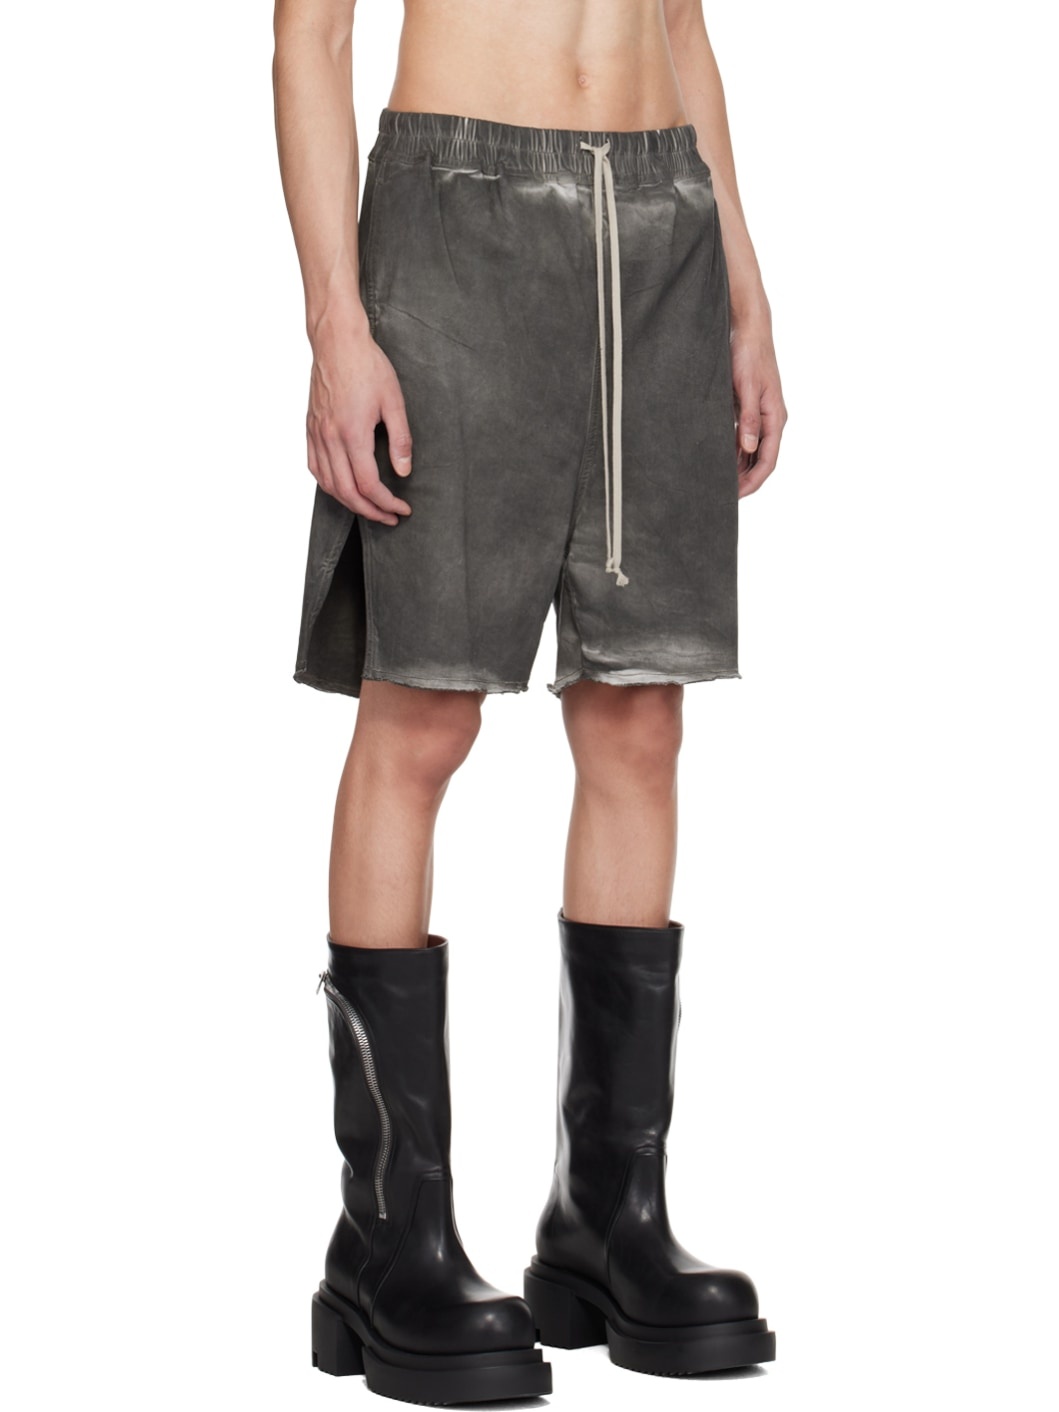 Gray Long Boxers Shorts - 2